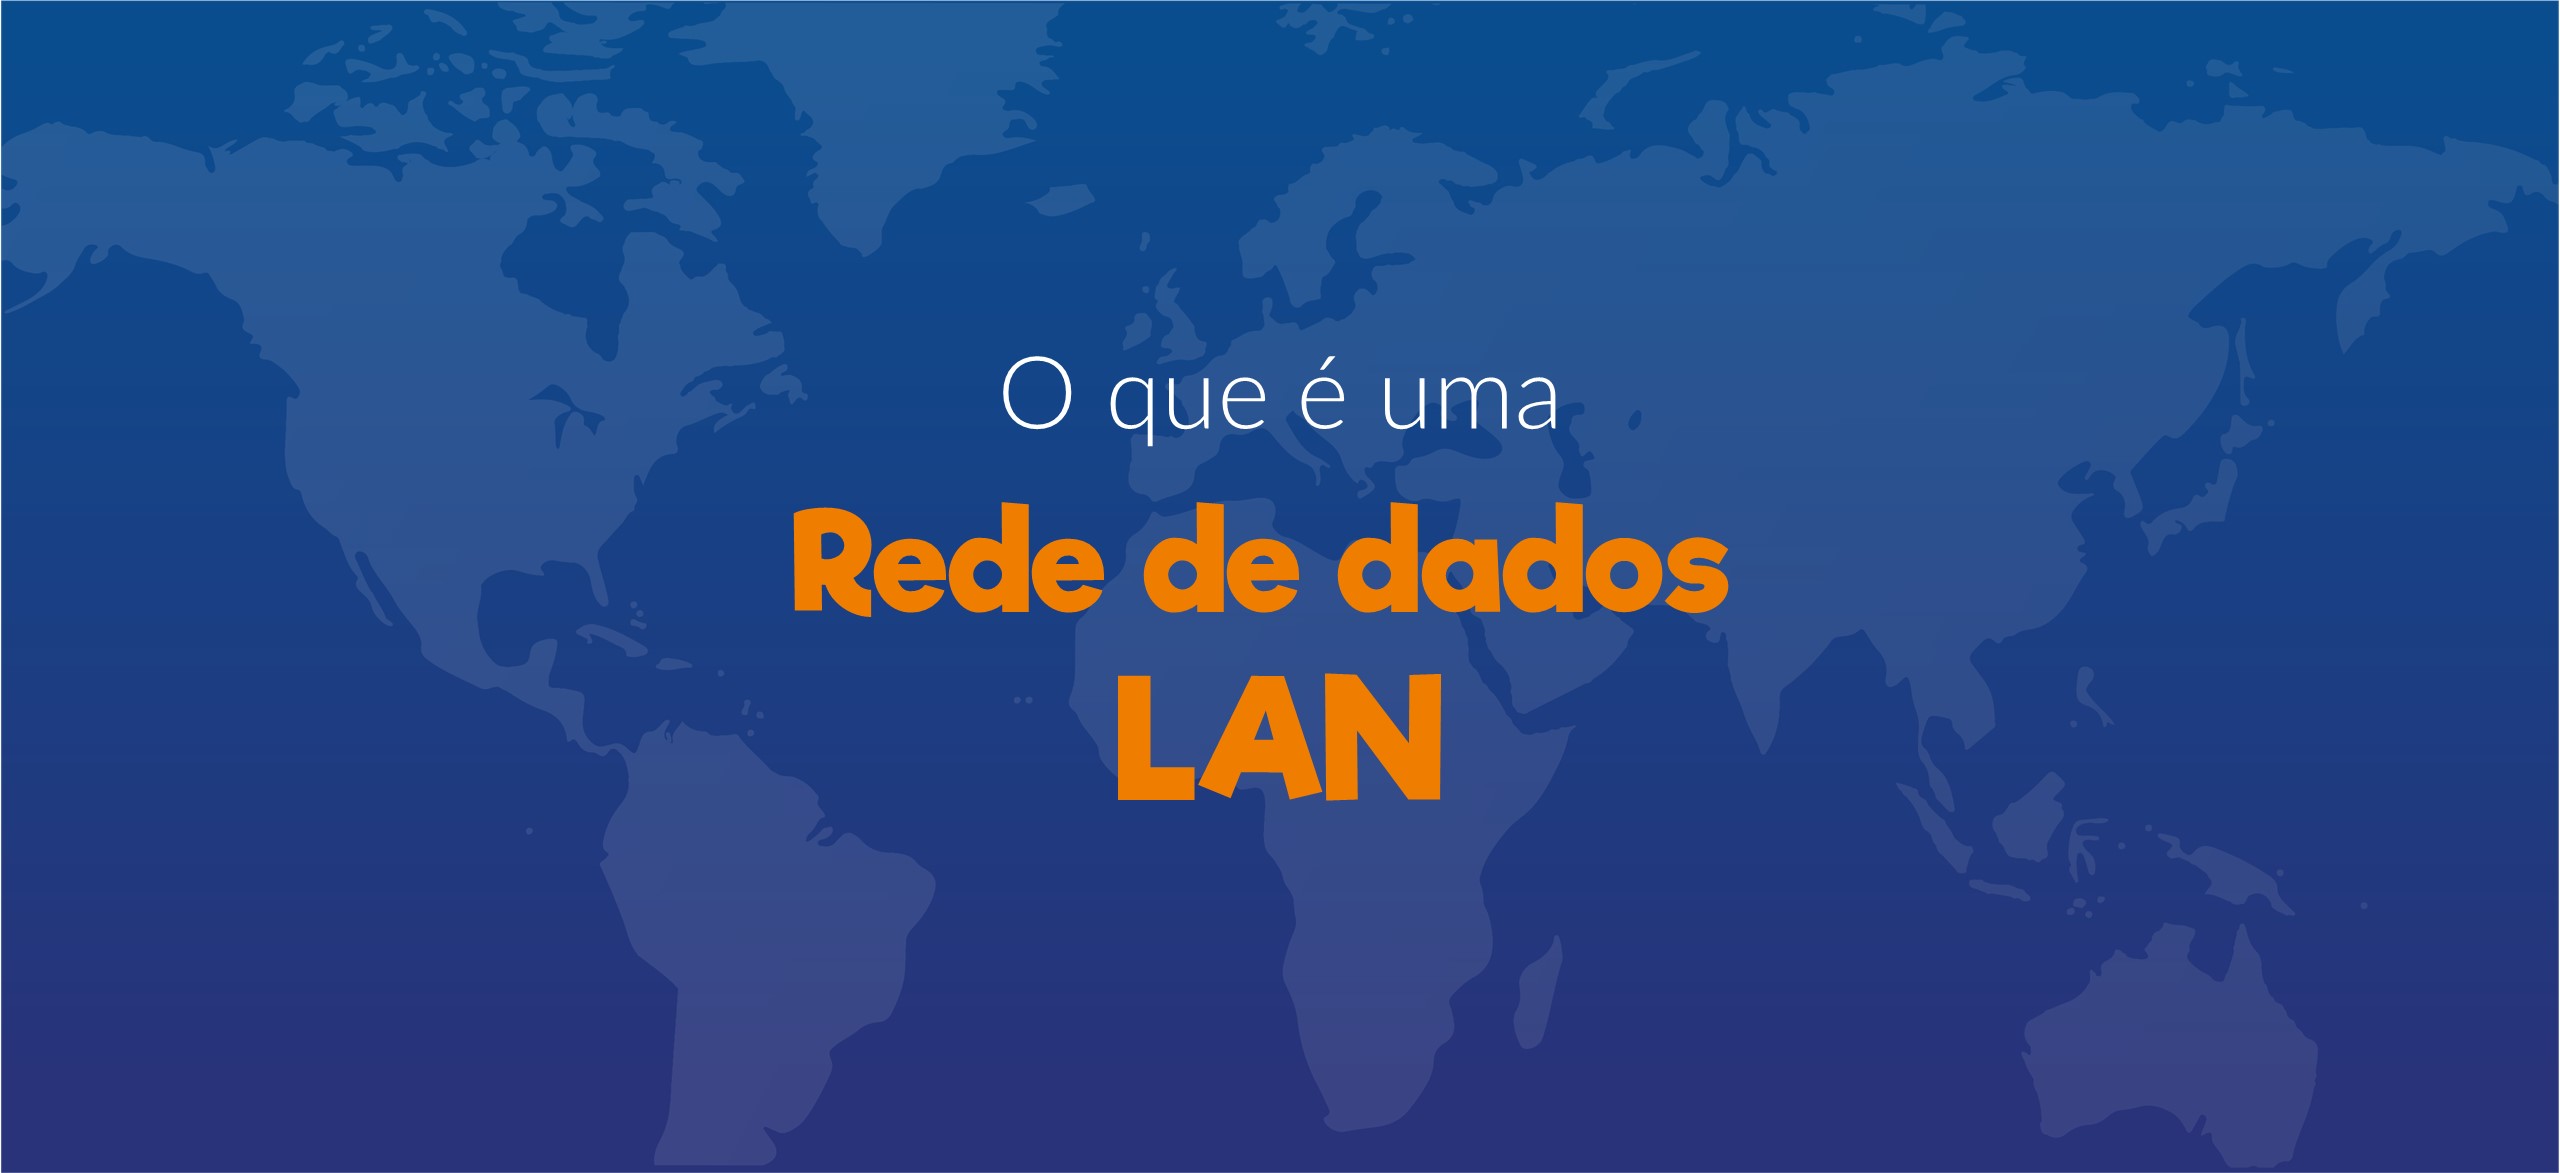 rede de dados LAN